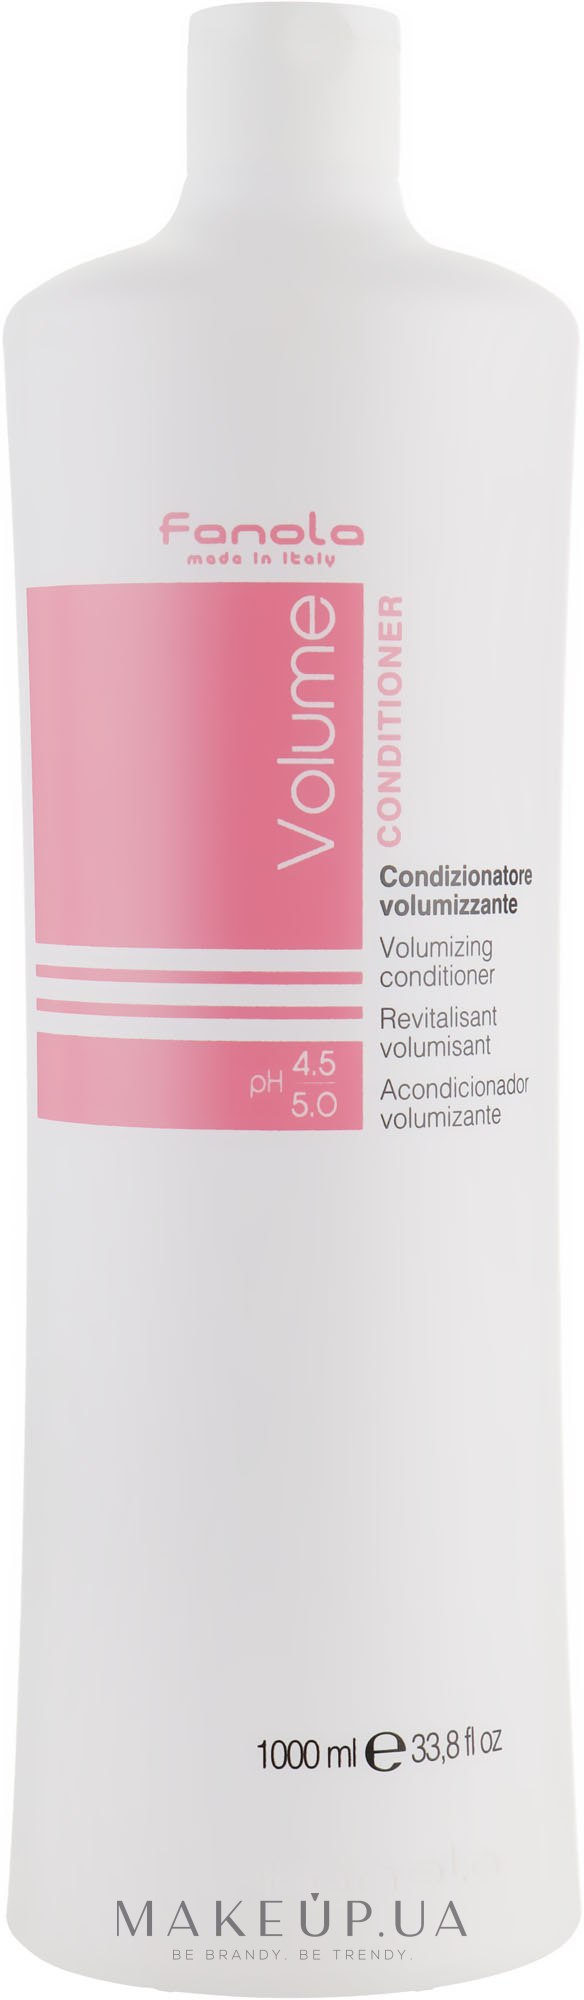 Кондиционер для тонких волос - Fanola Volumizing Conditioner — фото 1000ml